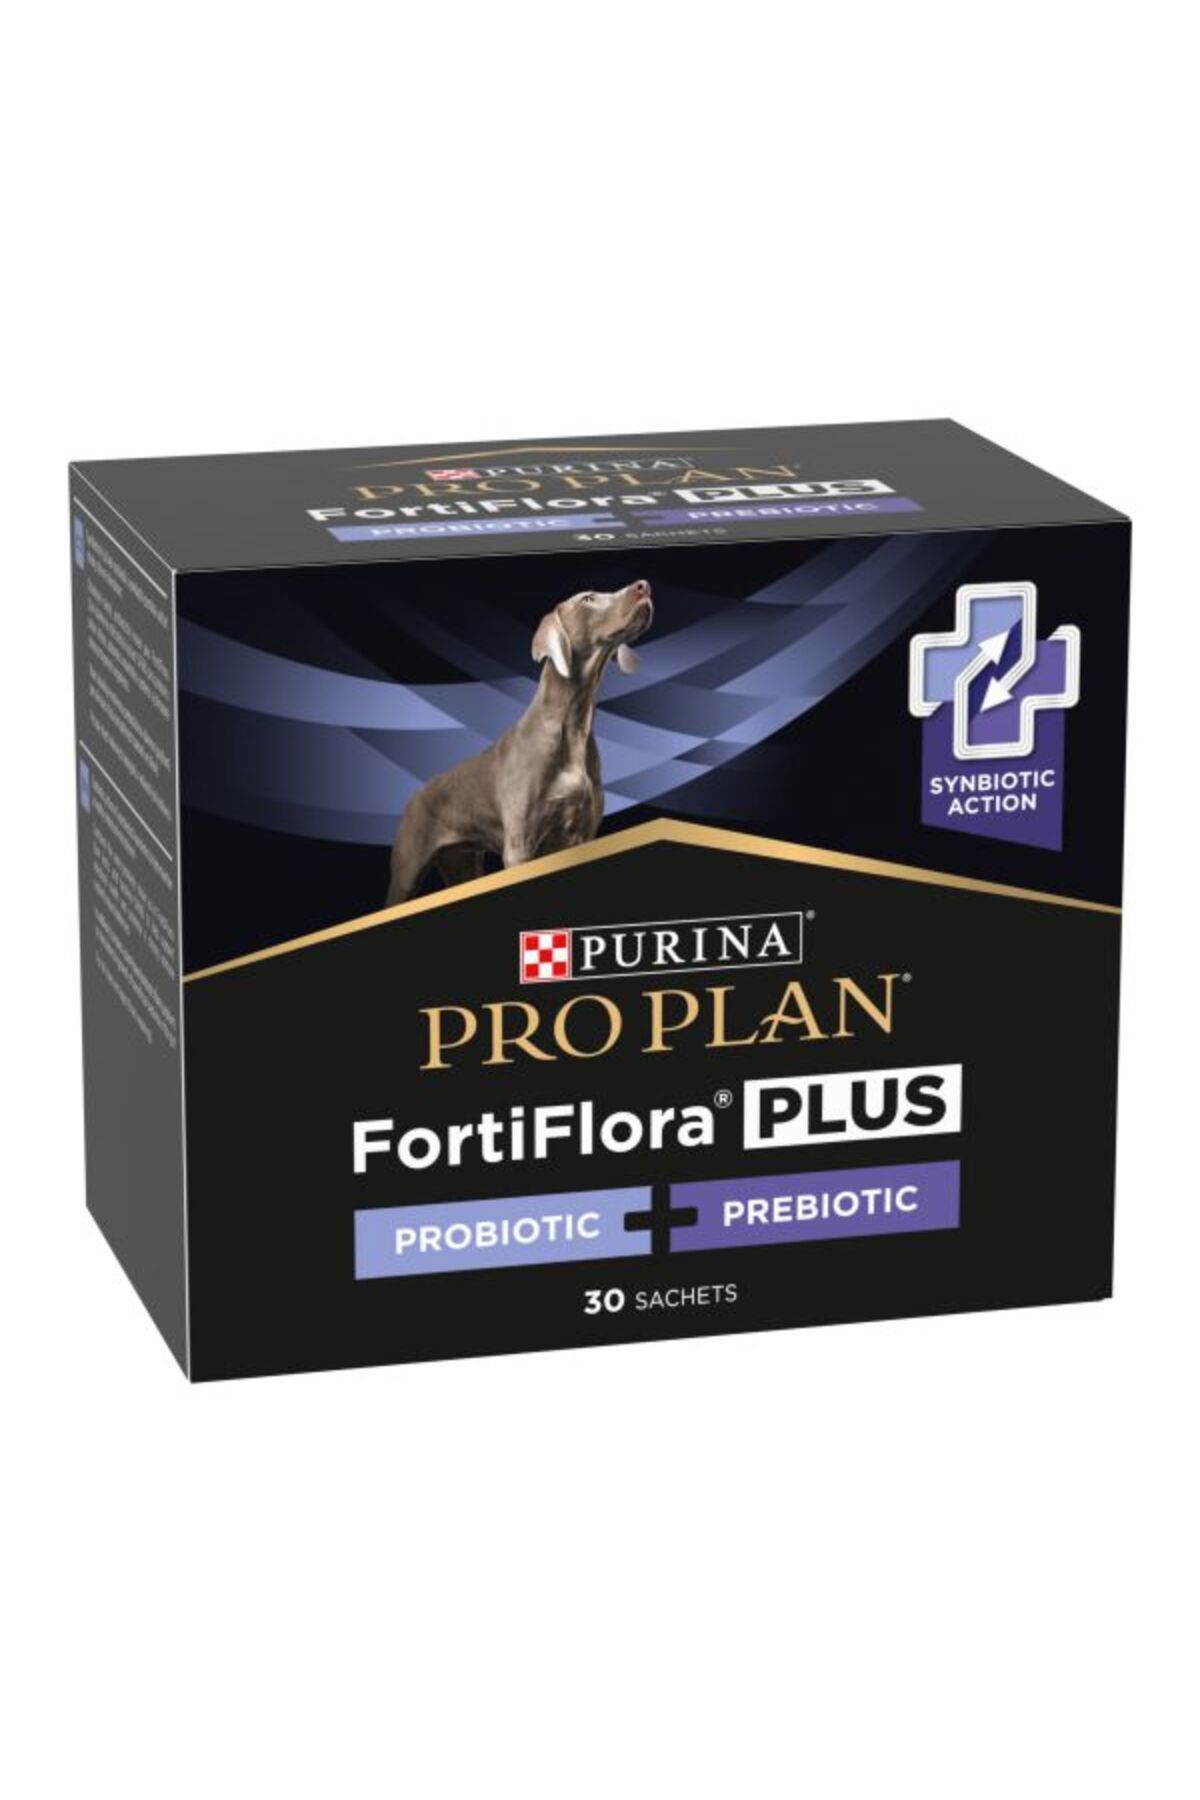 Purina Proplan Fortiflora Köpekler Için Probiyotik-prebiotik Takviyesi 30 Şase (30 X2 GR)